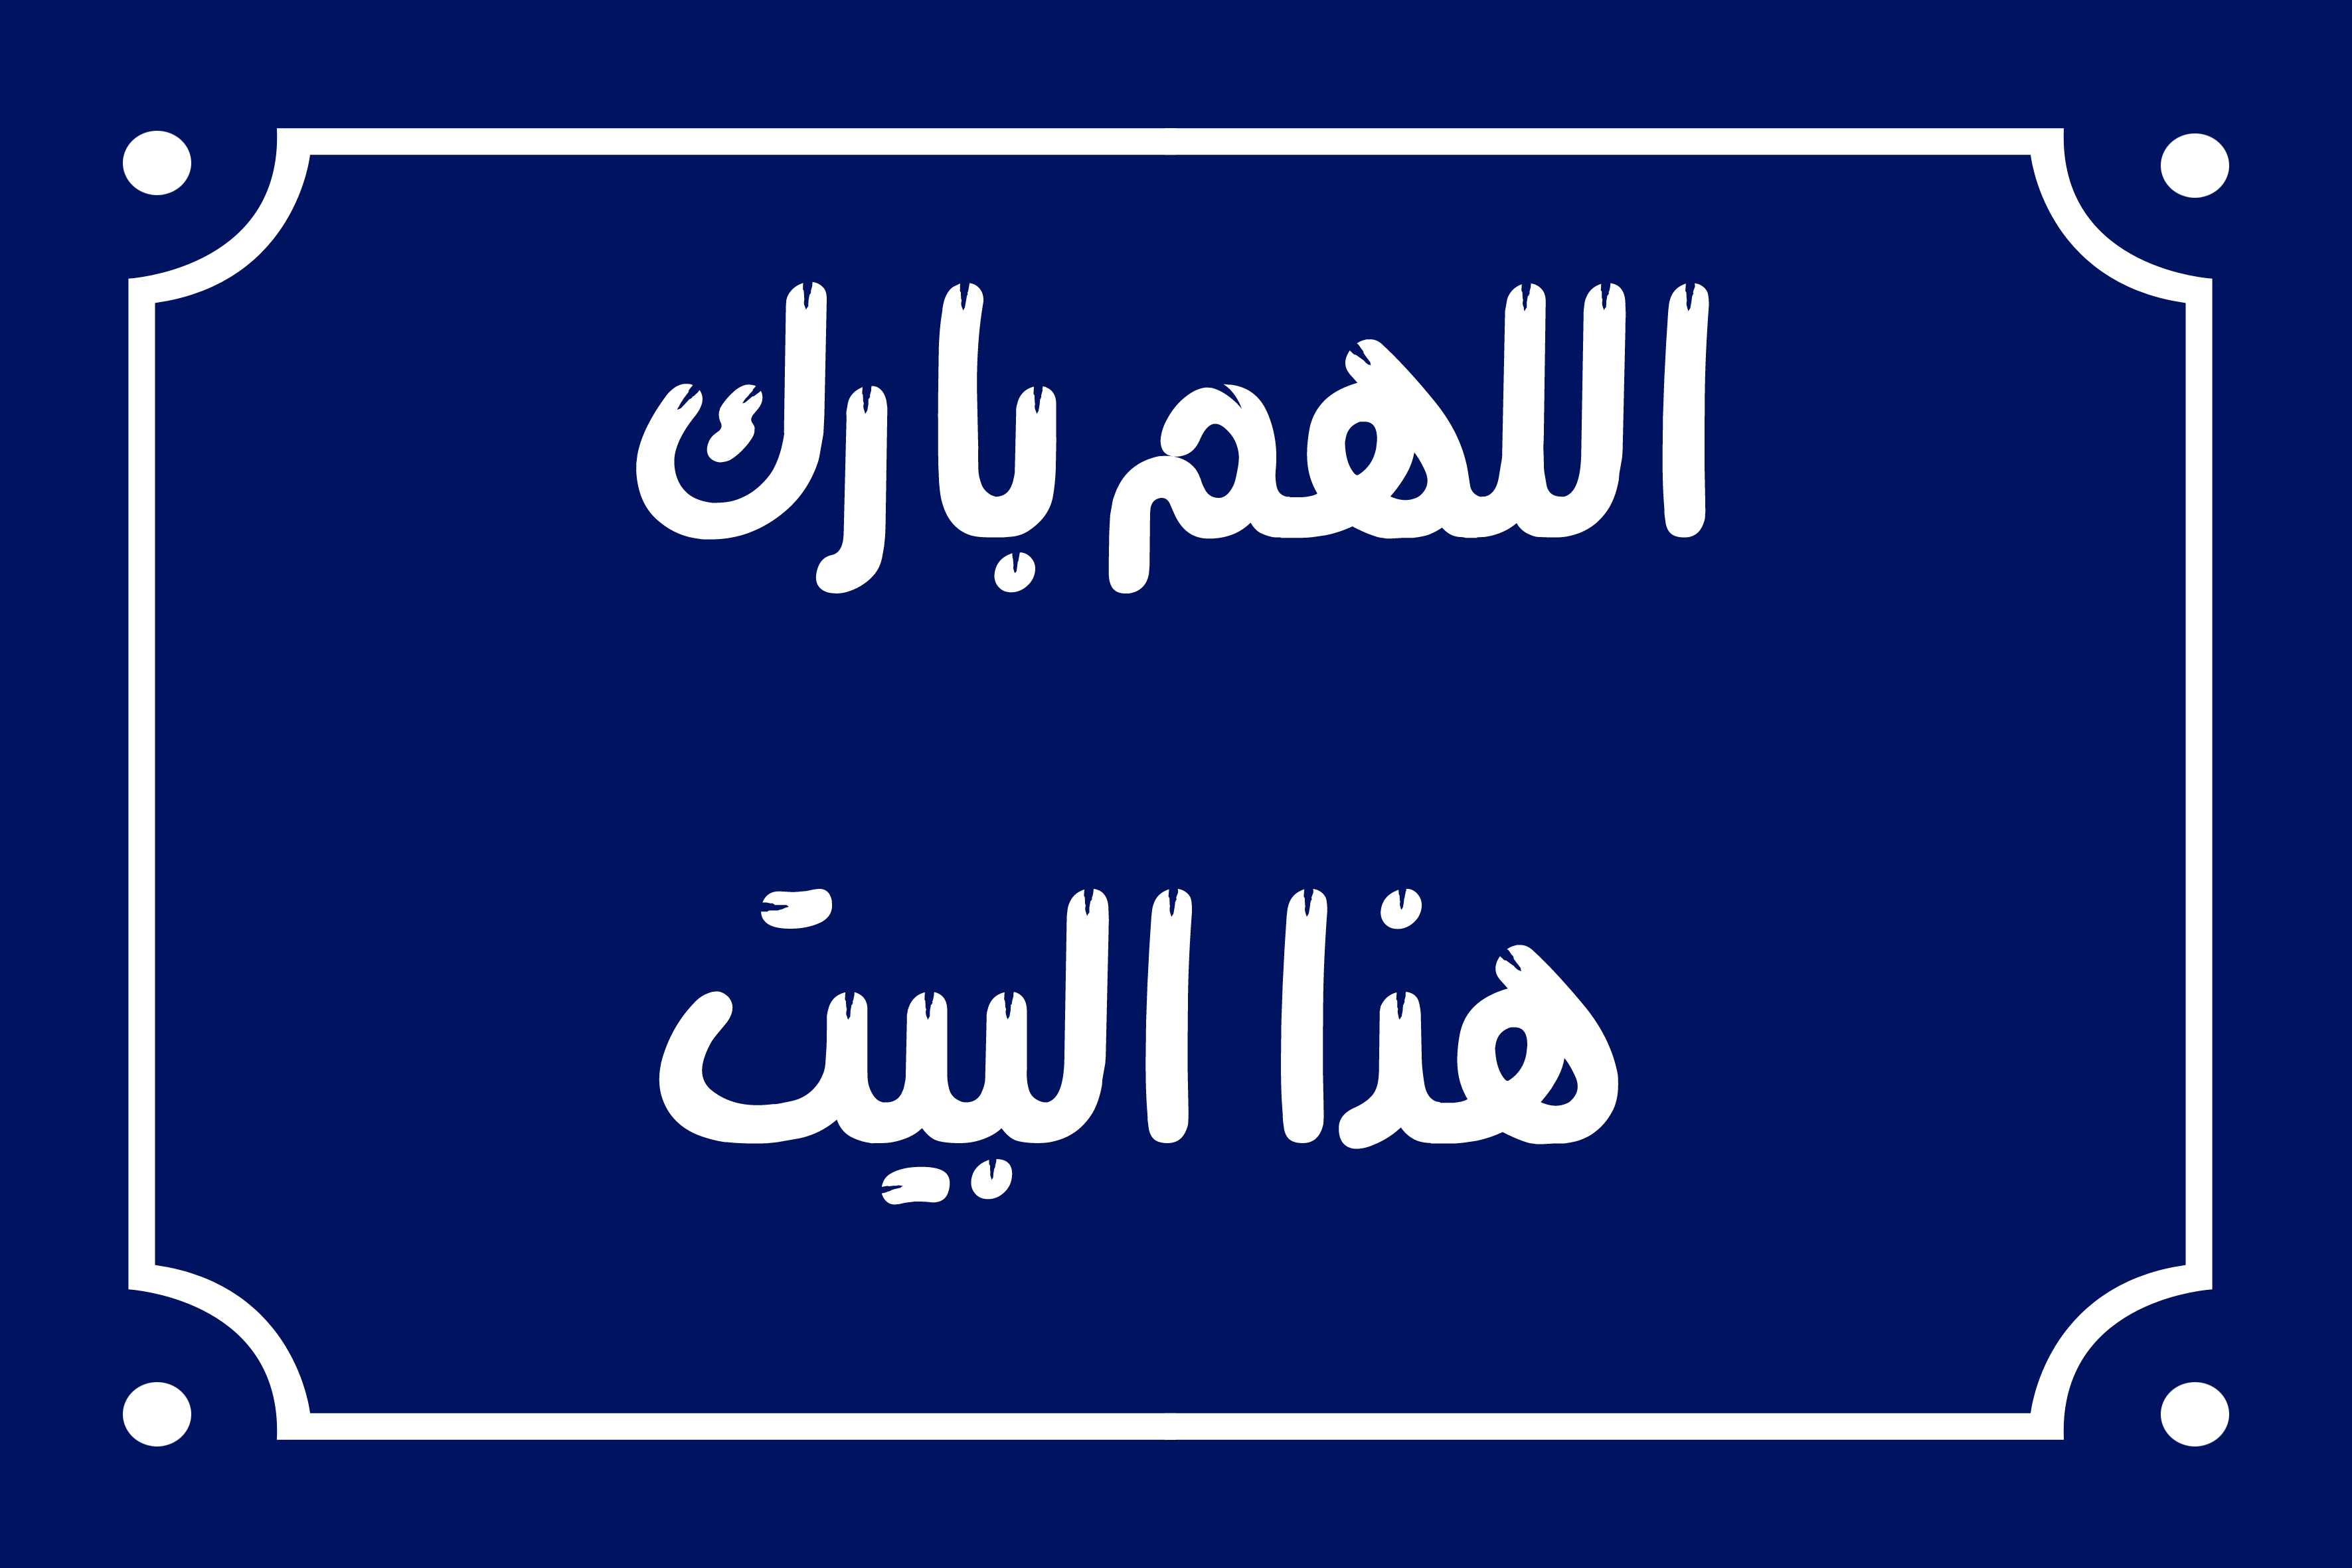 لافتة ديكور منزلي عليها عبارة مع جمله عربيه 20 × 30 سم - ازرق ابيض